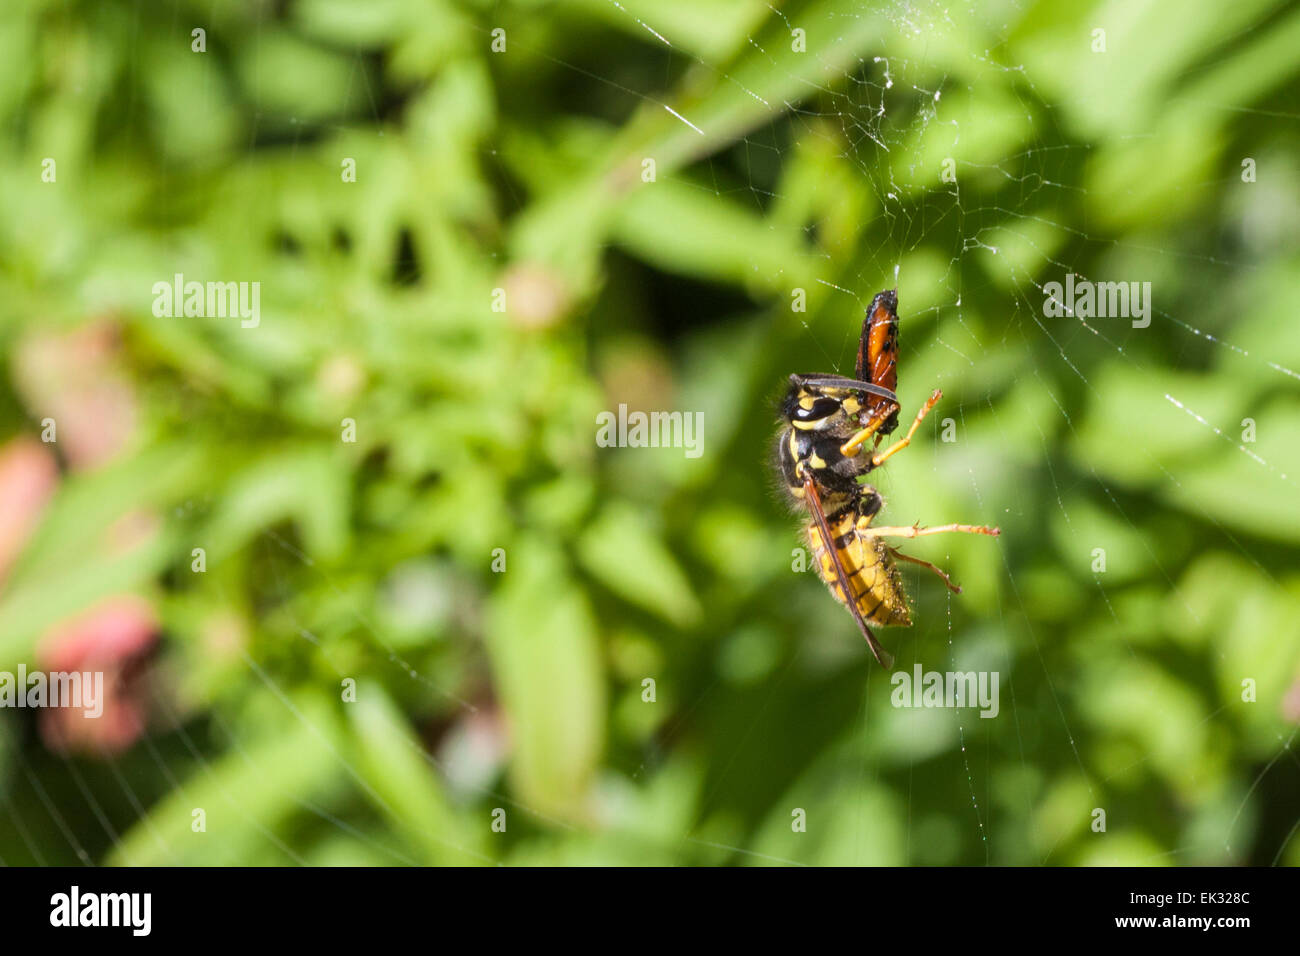 Eine Wespe, die Landung auf ein Spinnen-Netz zu spinnen Beute fressen. Stockfoto